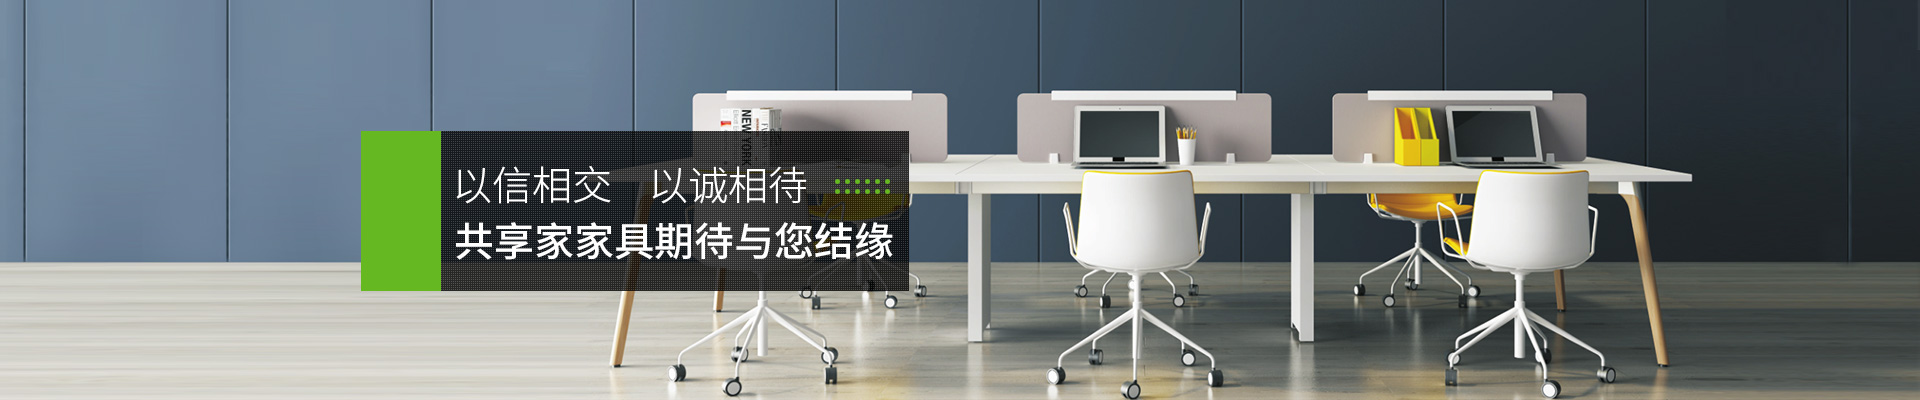 上海腾信办公家具有限公司图片展示